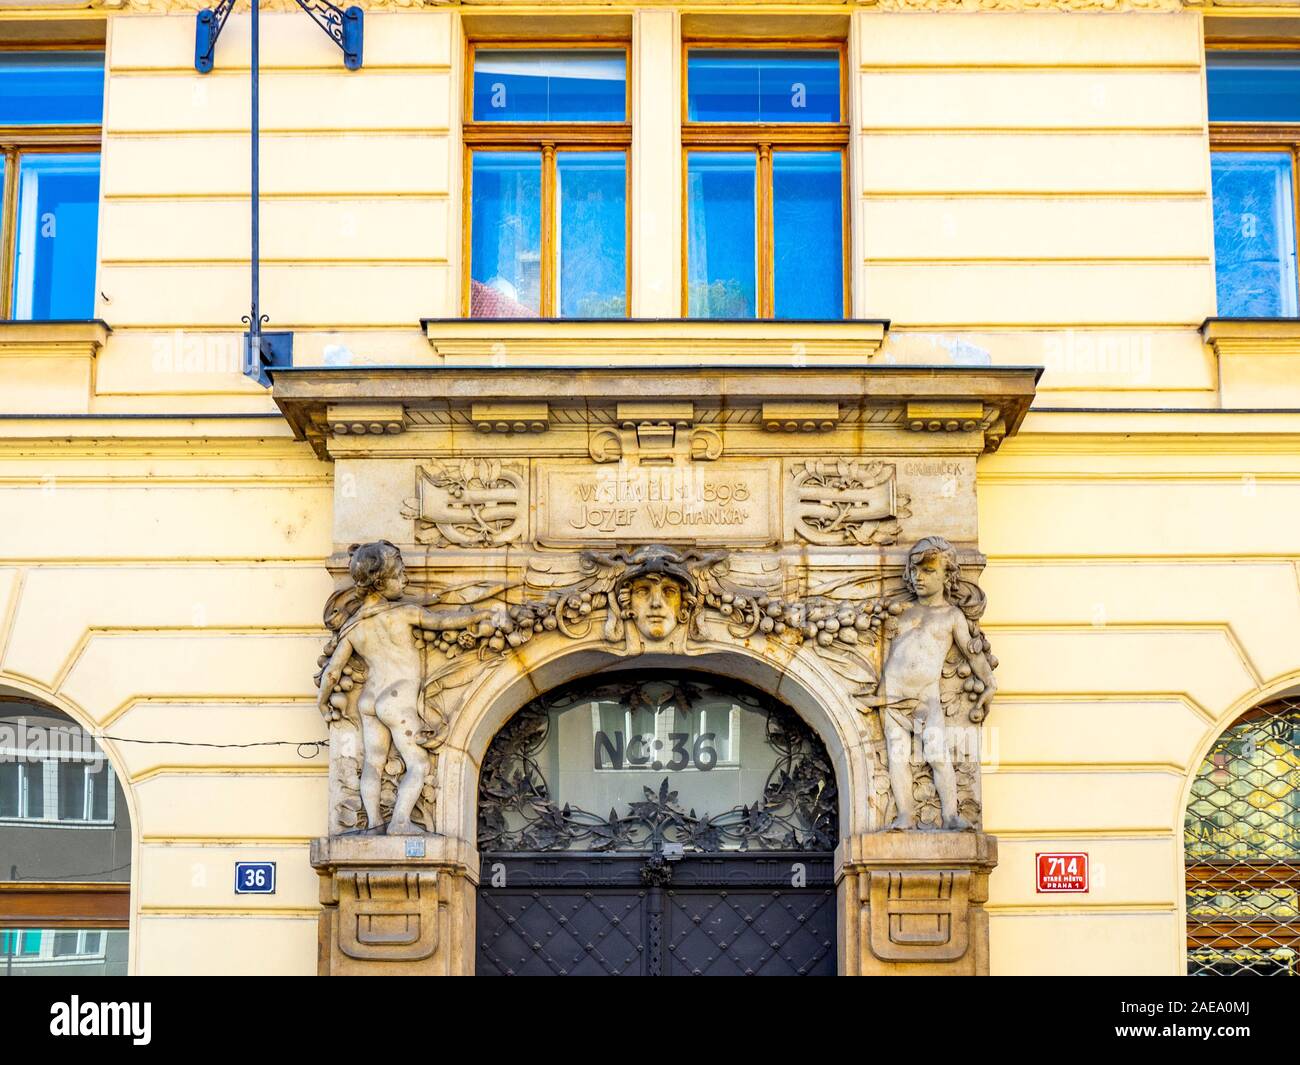 Entrée à la maison de Josef rytíř Wohanka n° 714 / I à Dlouhá třída 36 Vieille Ville Prague République tchèque. Banque D'Images